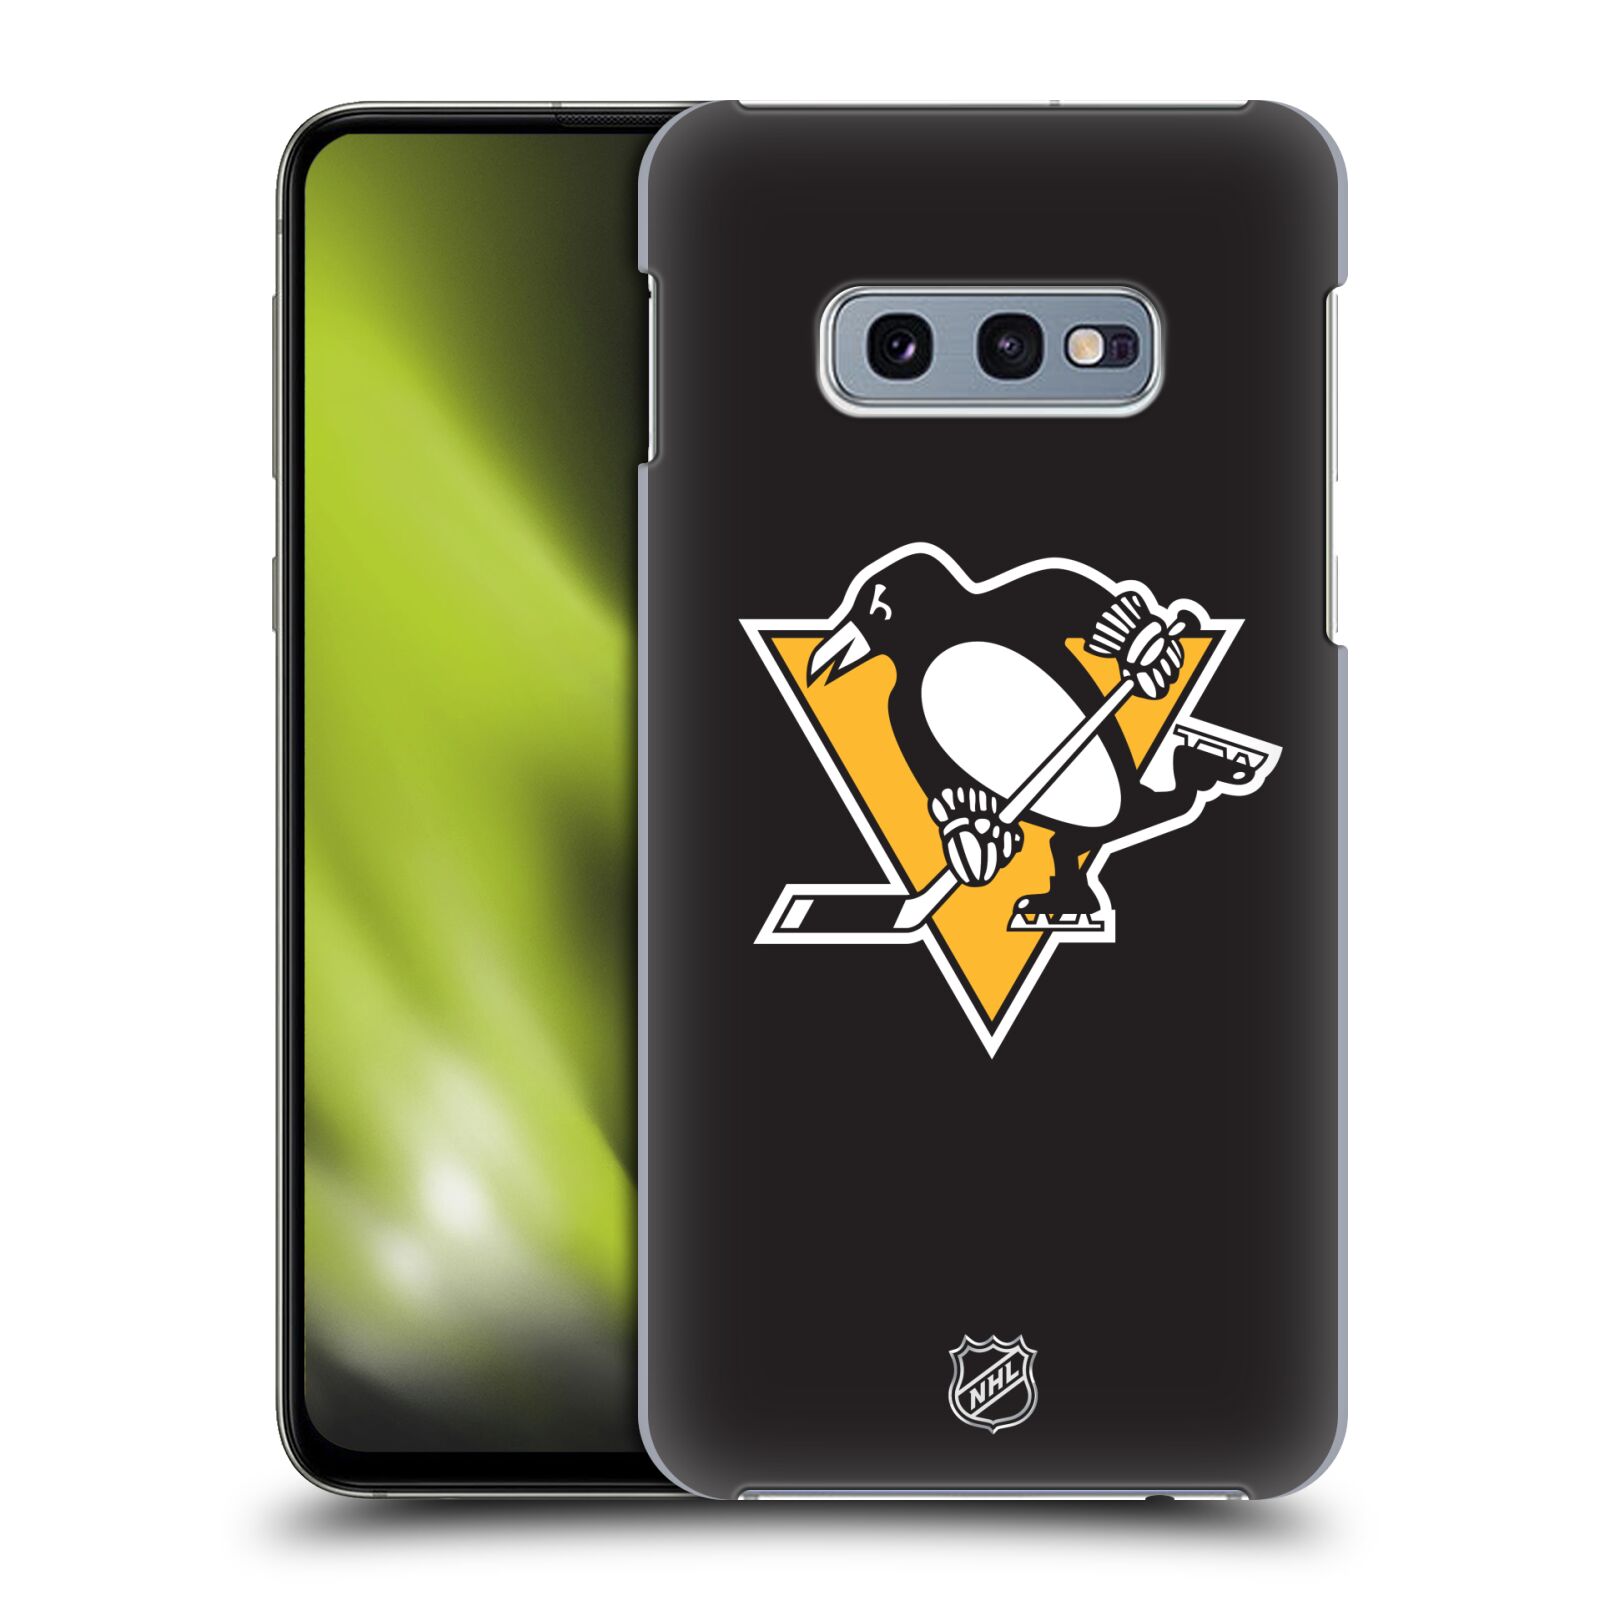 Pouzdro na mobil Samsung Galaxy S10e - HEAD CASE - Hokej NHL - Pittsburgh Penguins - černé pozadí znak